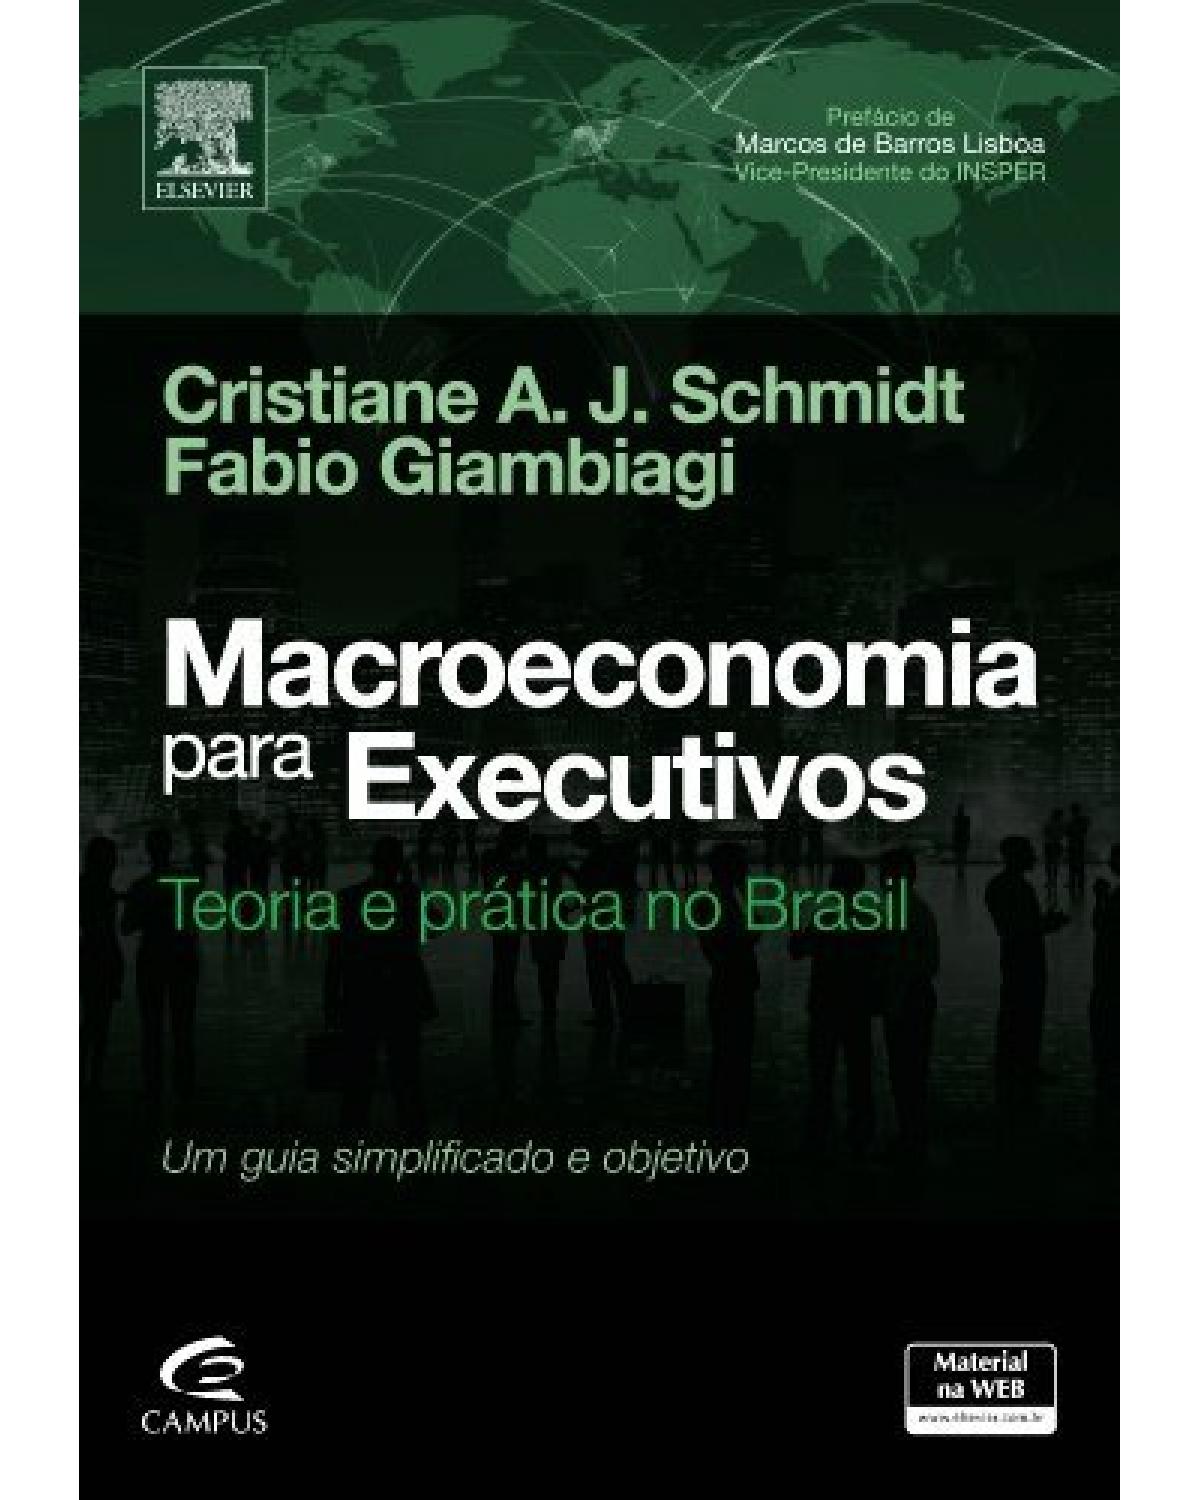 Macroeconomia para executivos - teoria e prática no Brasil - 1ª Edição | 2014